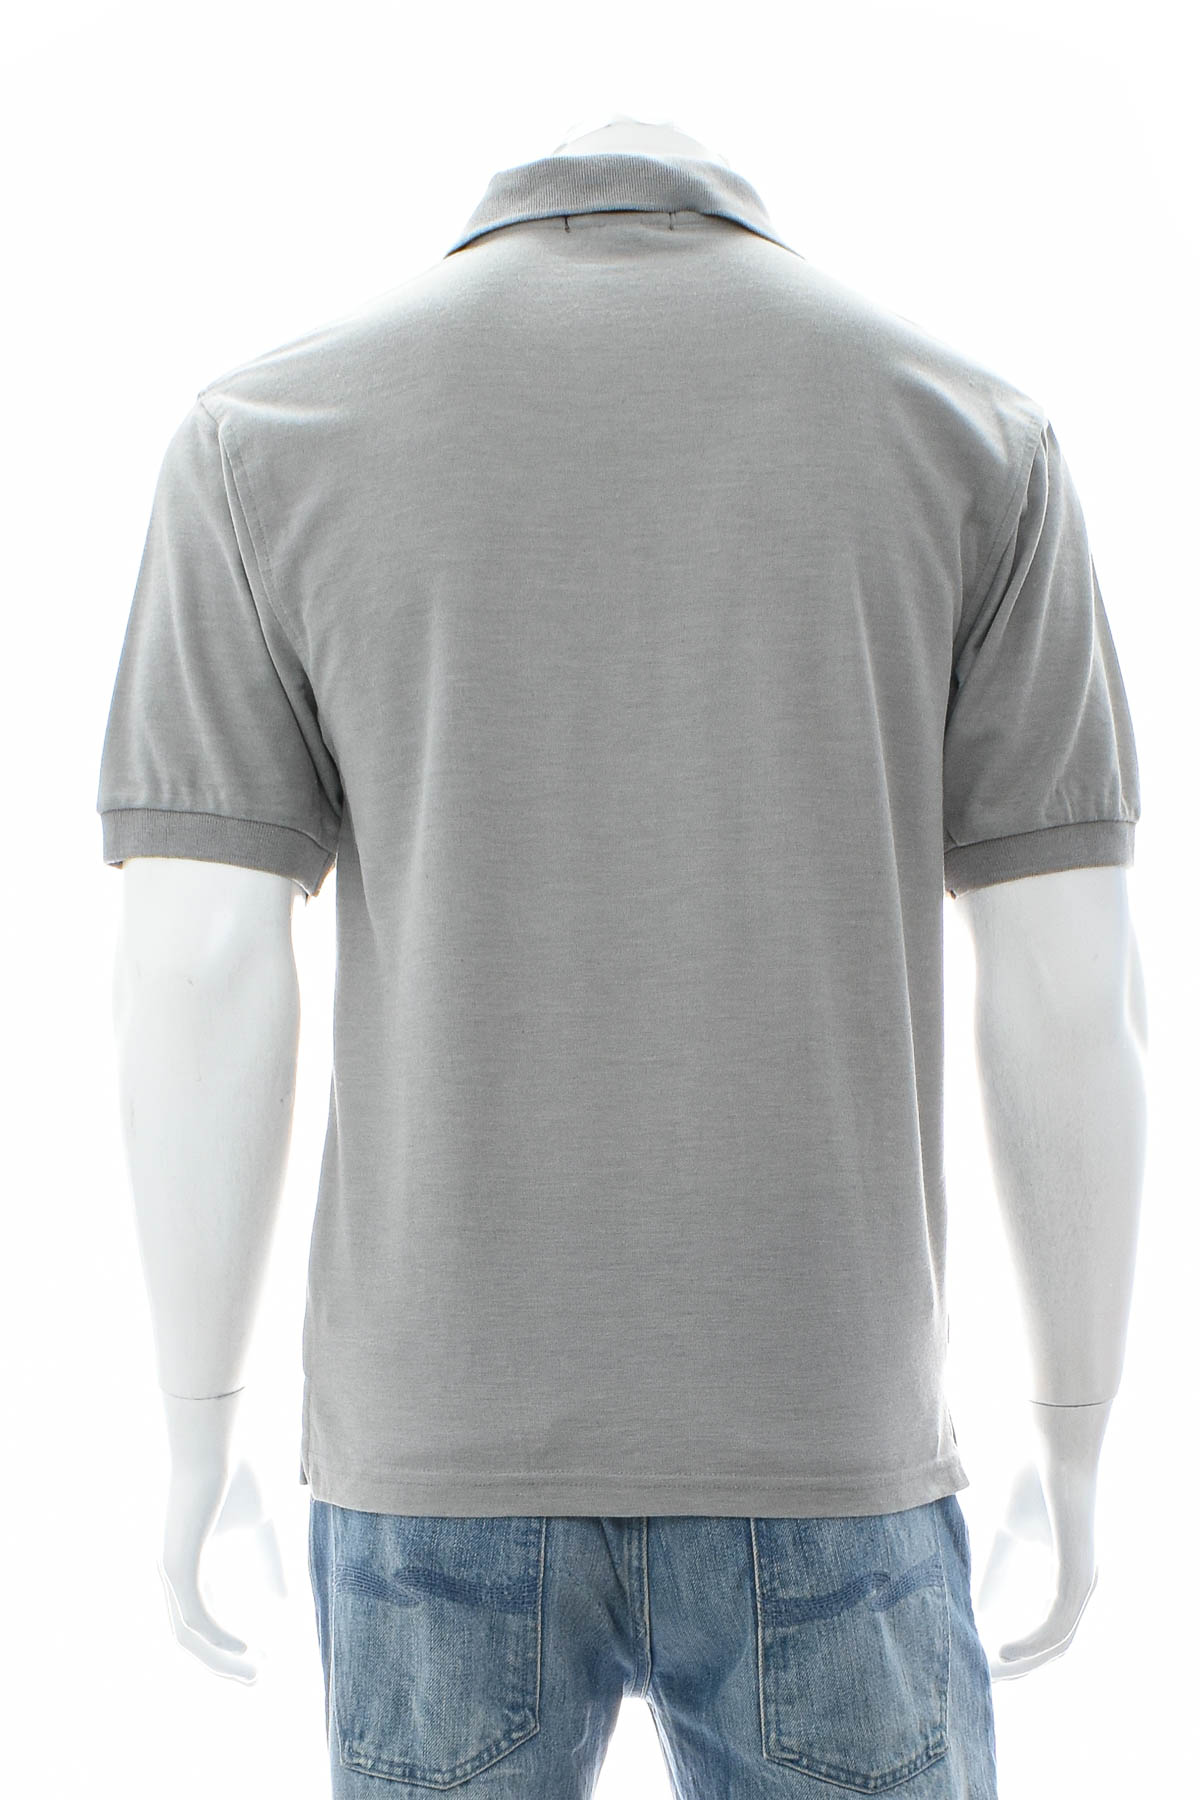 Ανδρικό μπλουζάκι - Bossini - 1